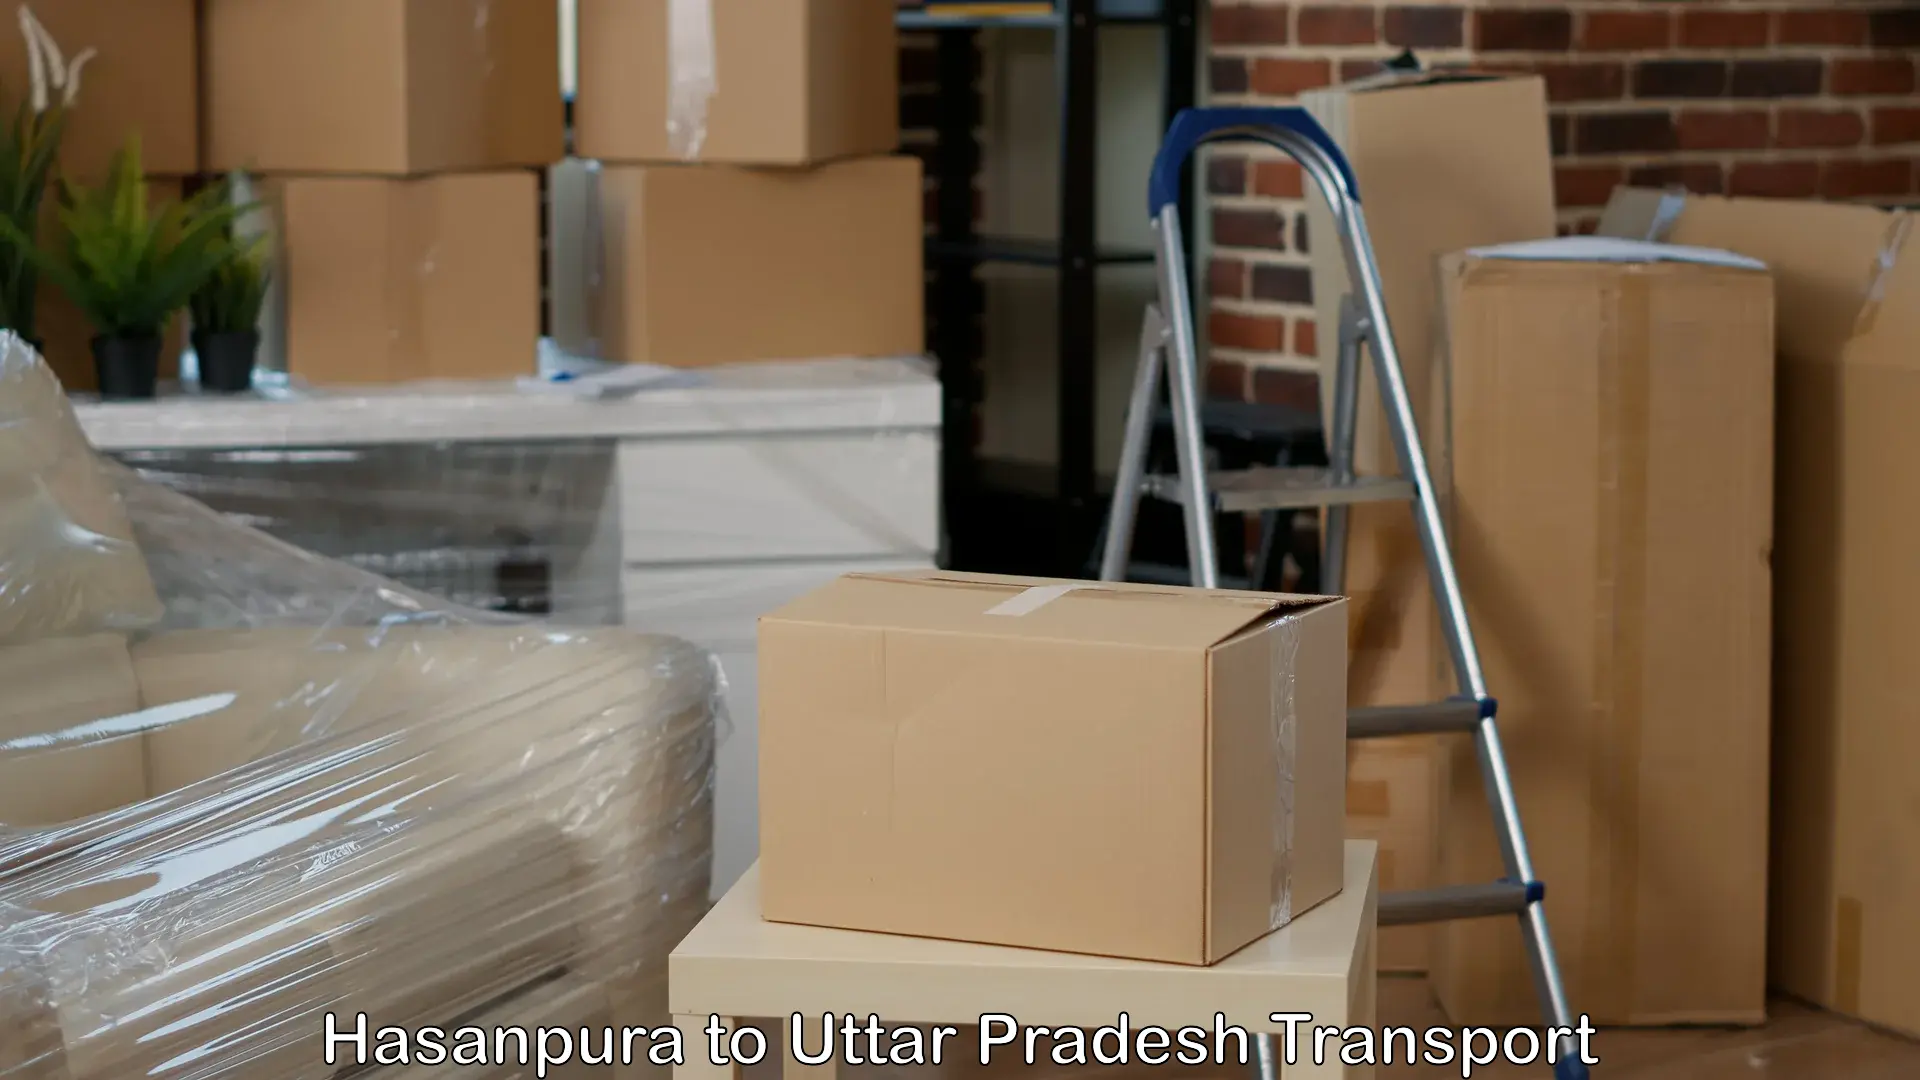 Air freight transport services Hasanpura to Uttar Pradesh